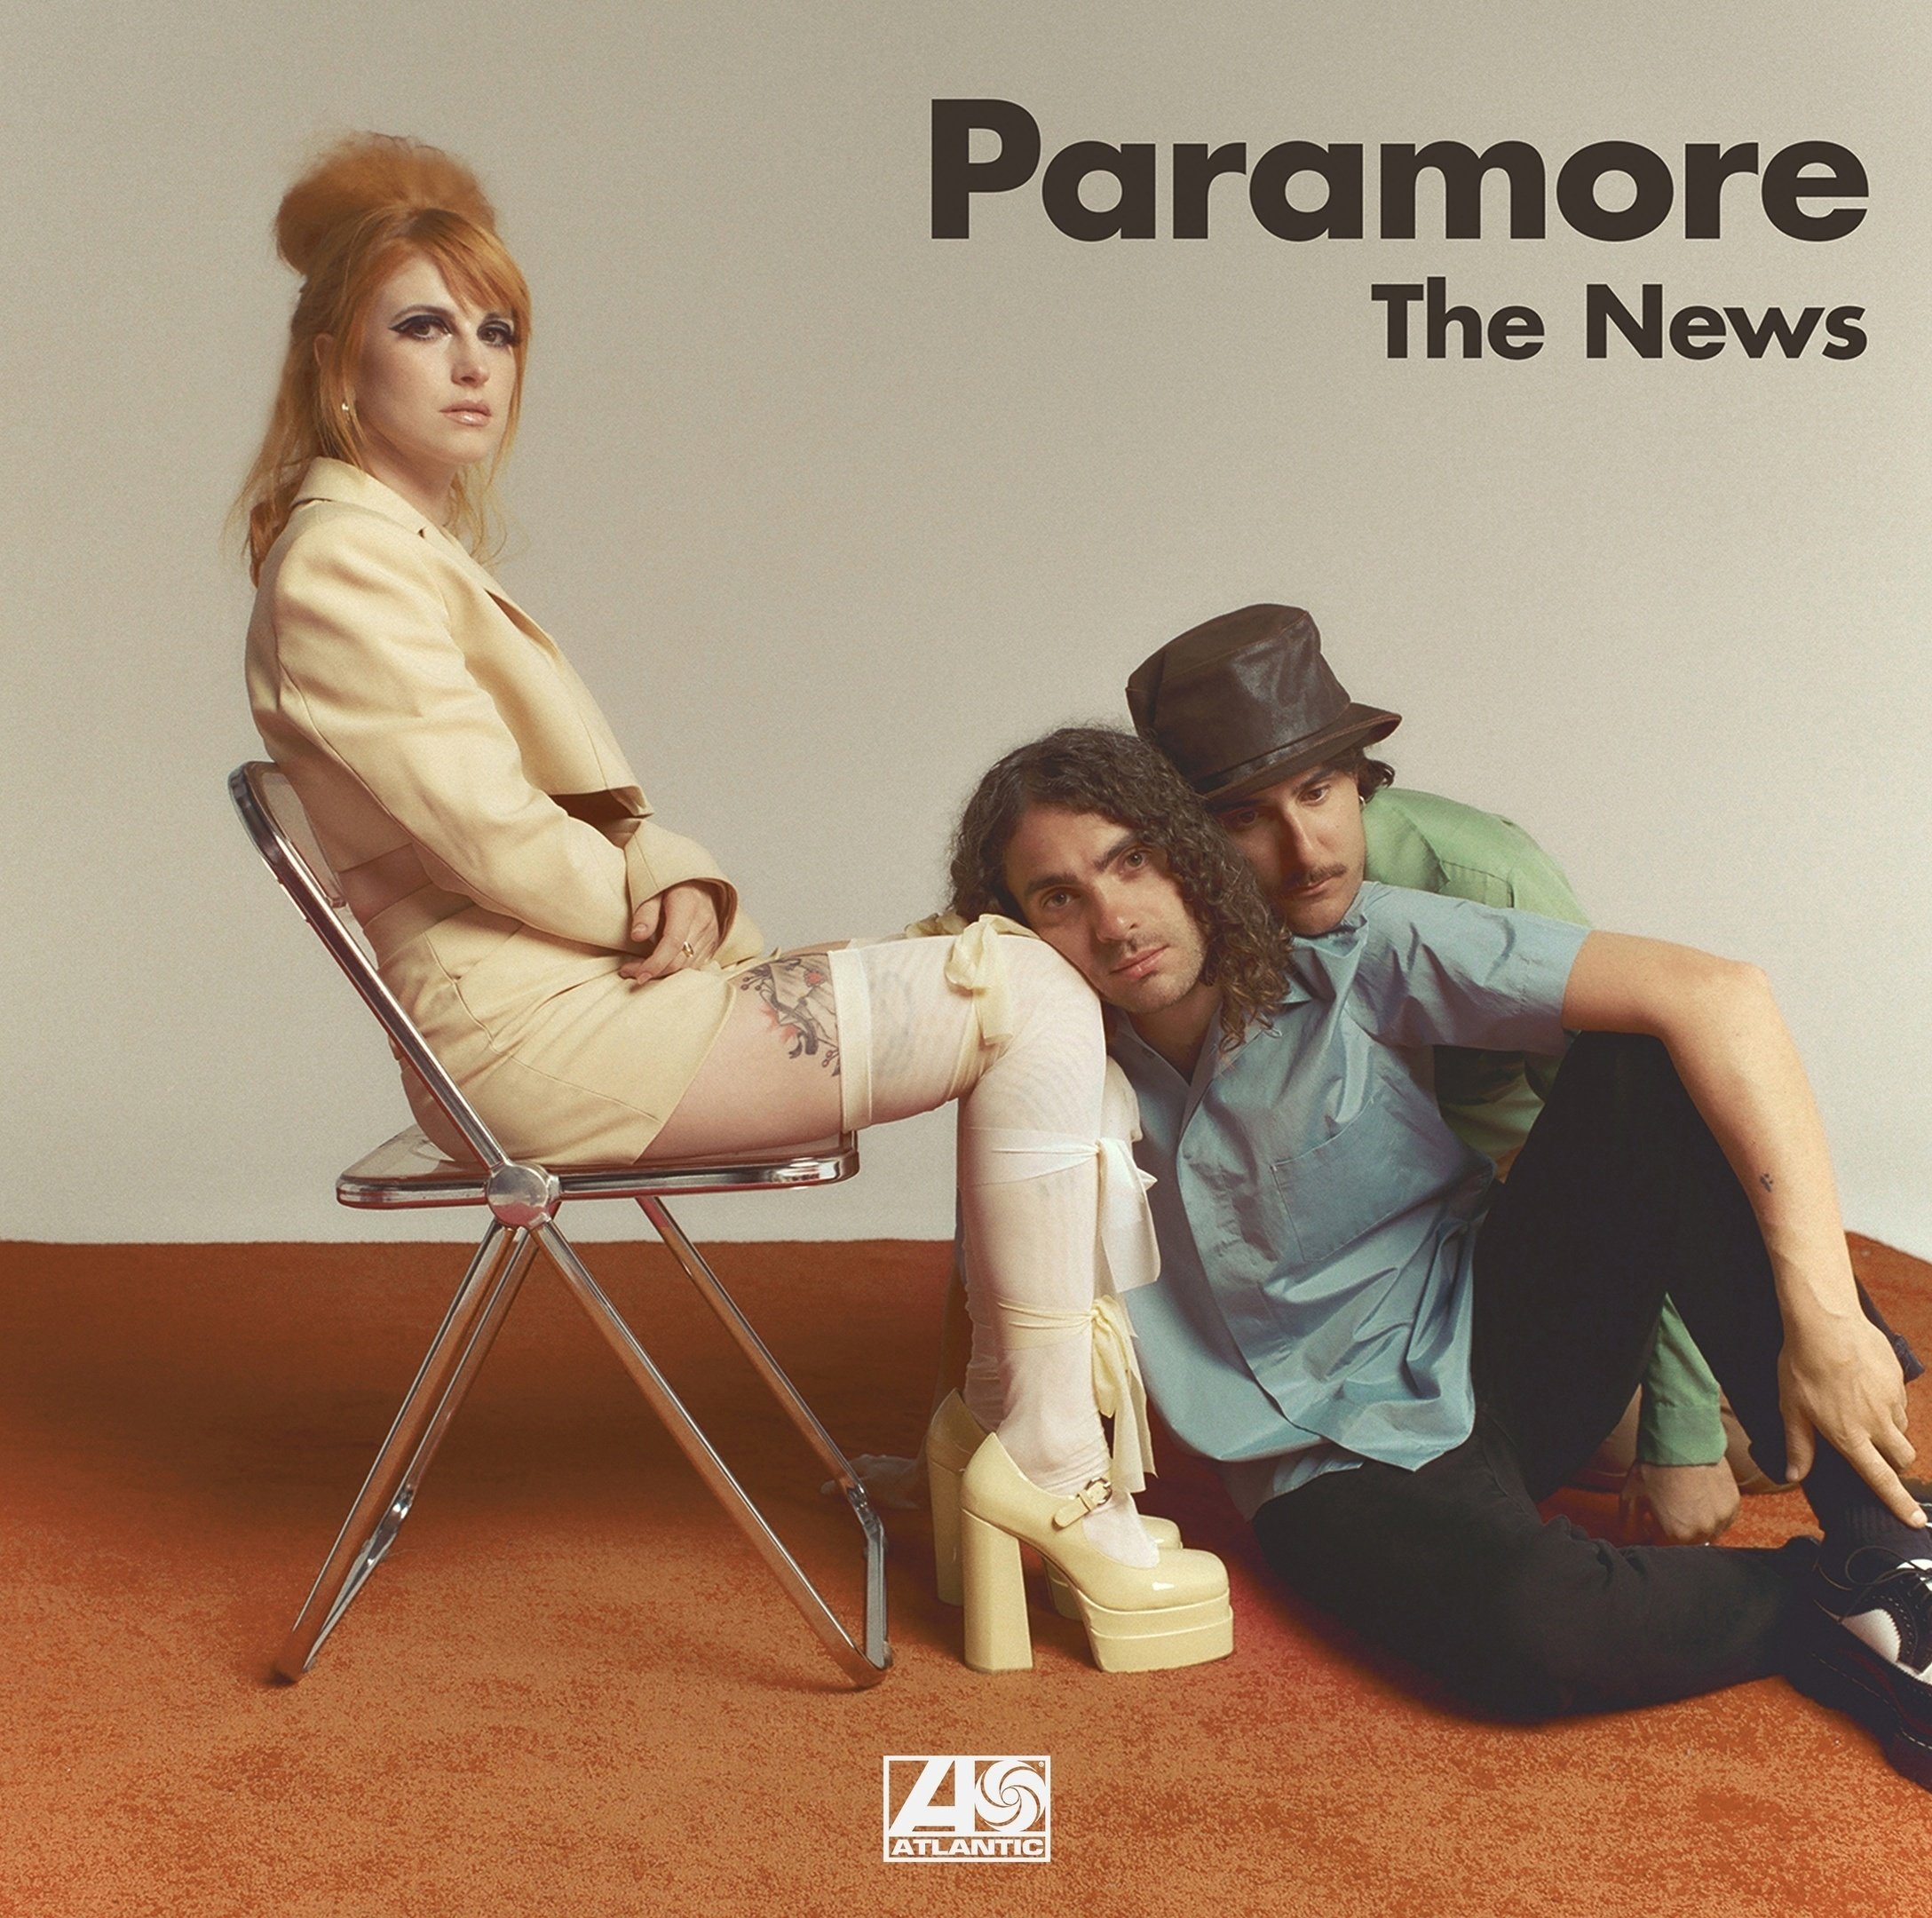 Paramore The News cover artwork